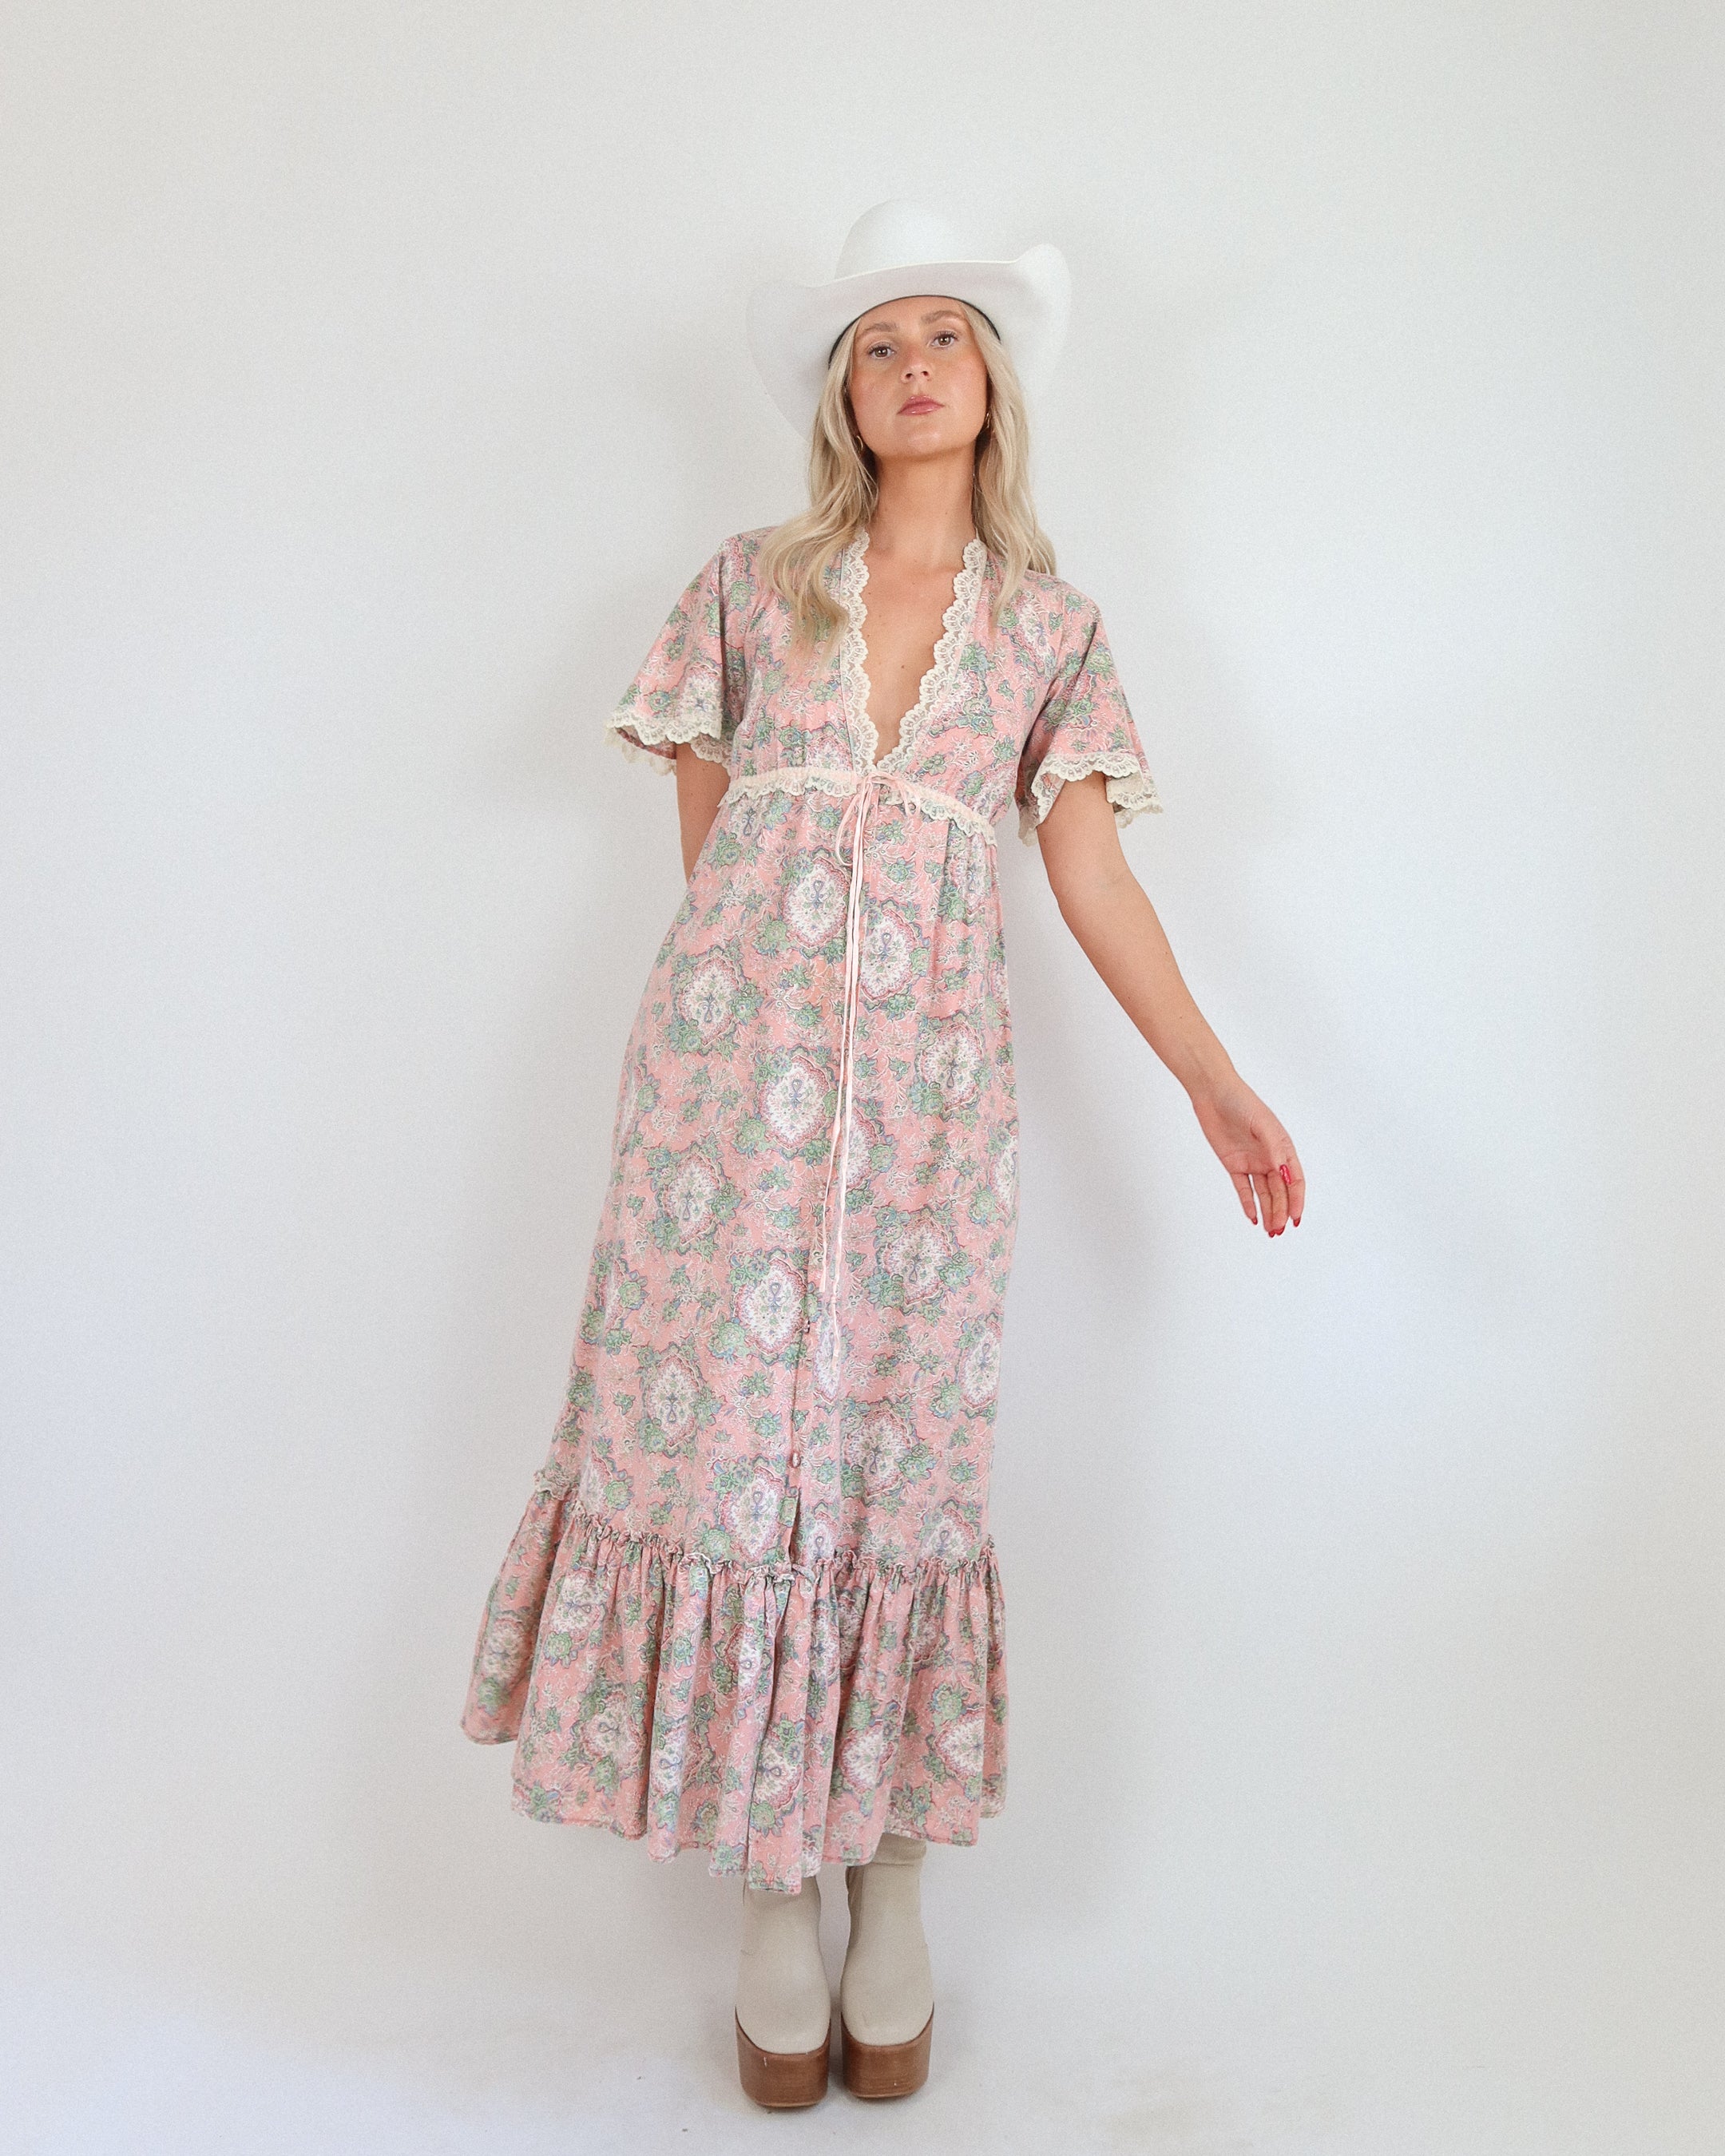 Vintaged 70's Floral Dress